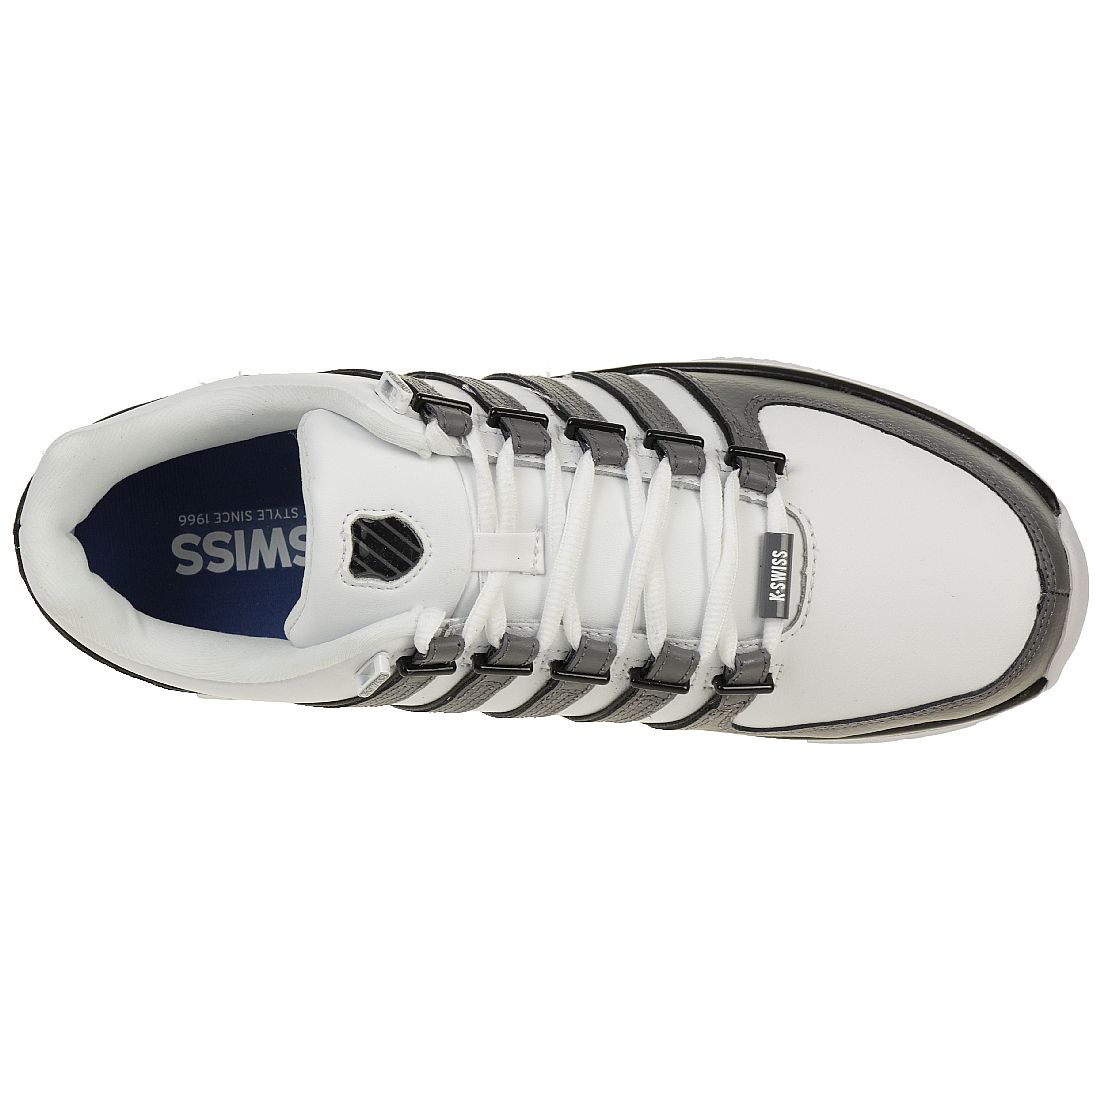 K-Swiss Rinzler SP Sneaker 02283-107-M grau